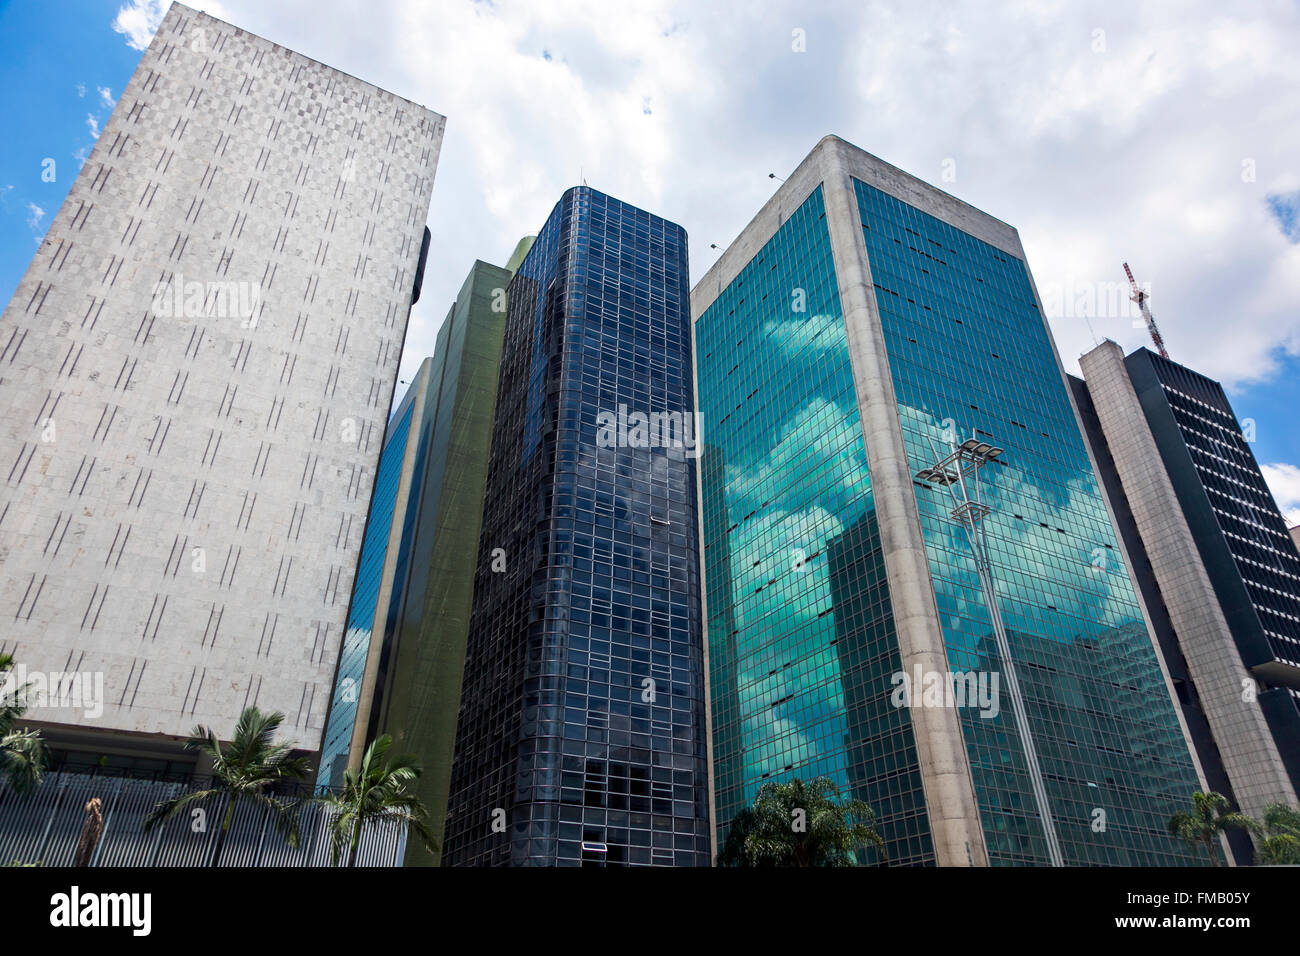 I moderni grattacieli su Paulista Avenue, Sao Paulo, Brasile (terzo edificio - Cetenco Plaza) Foto Stock